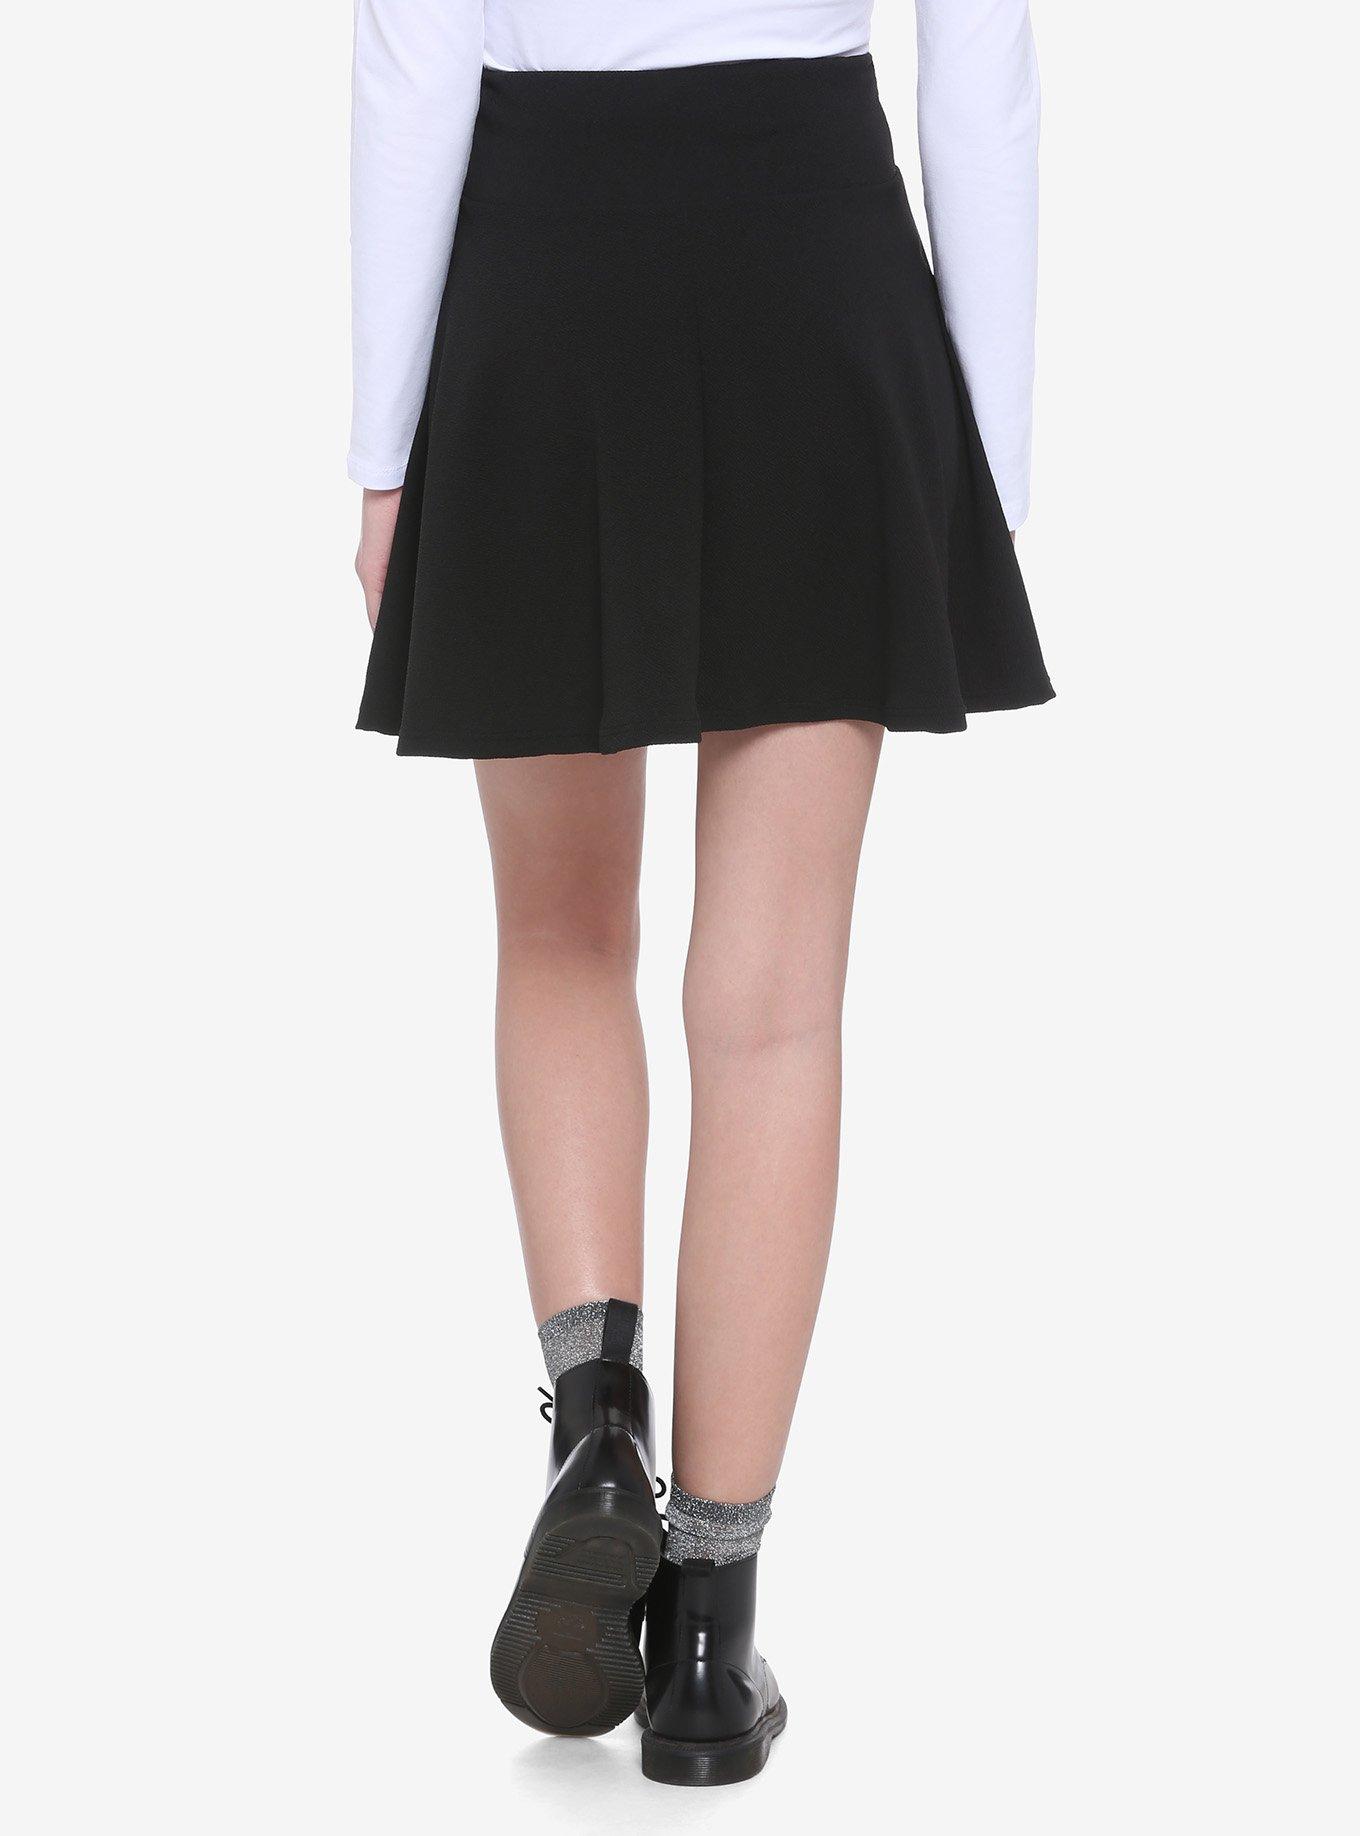 Lace-Up Skater Skirt, BLACK, alternate